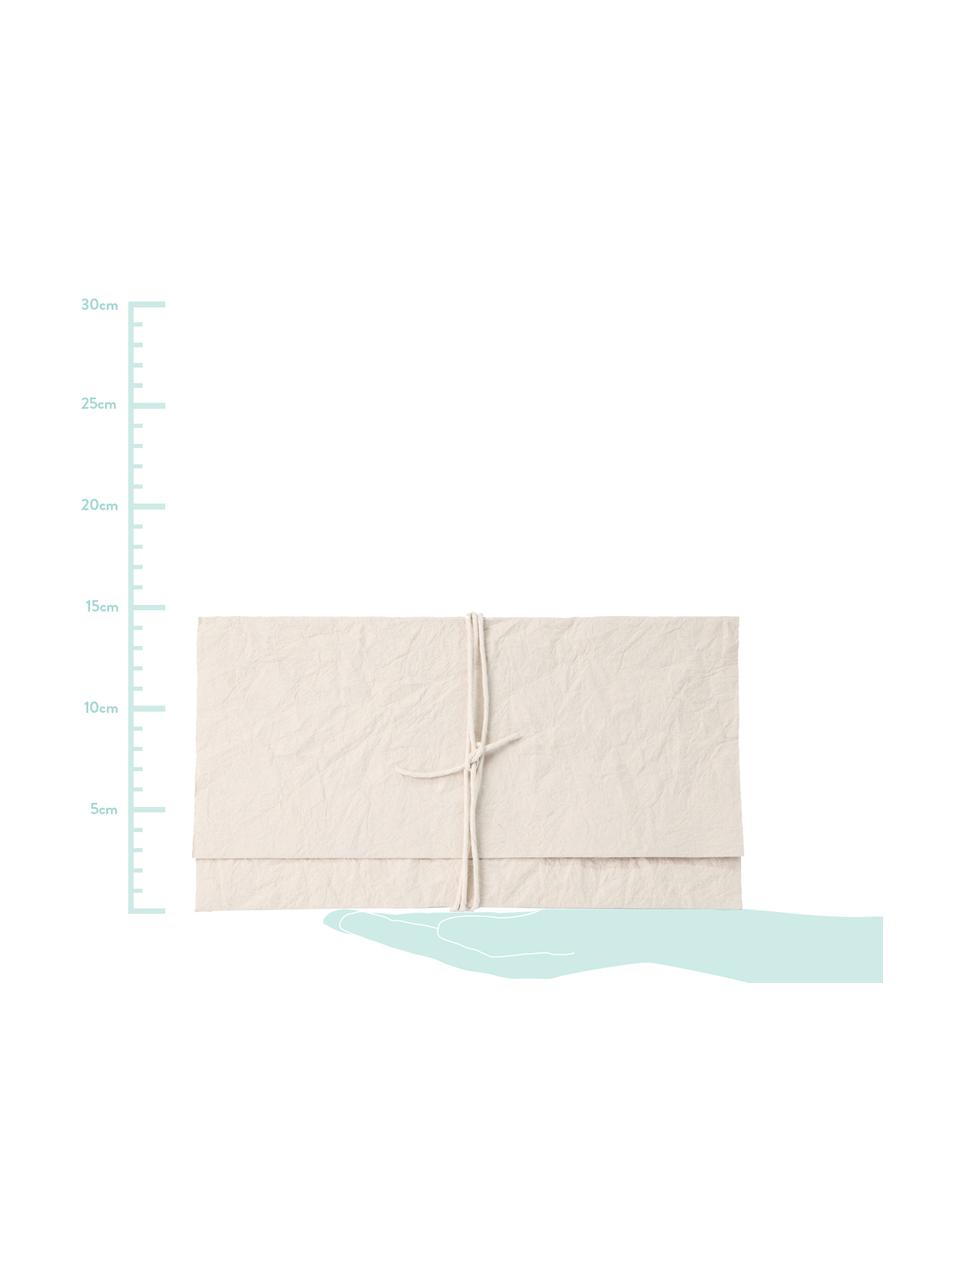 Umschlag Soft, Papier, Cremefarben, 27 x 15 cm